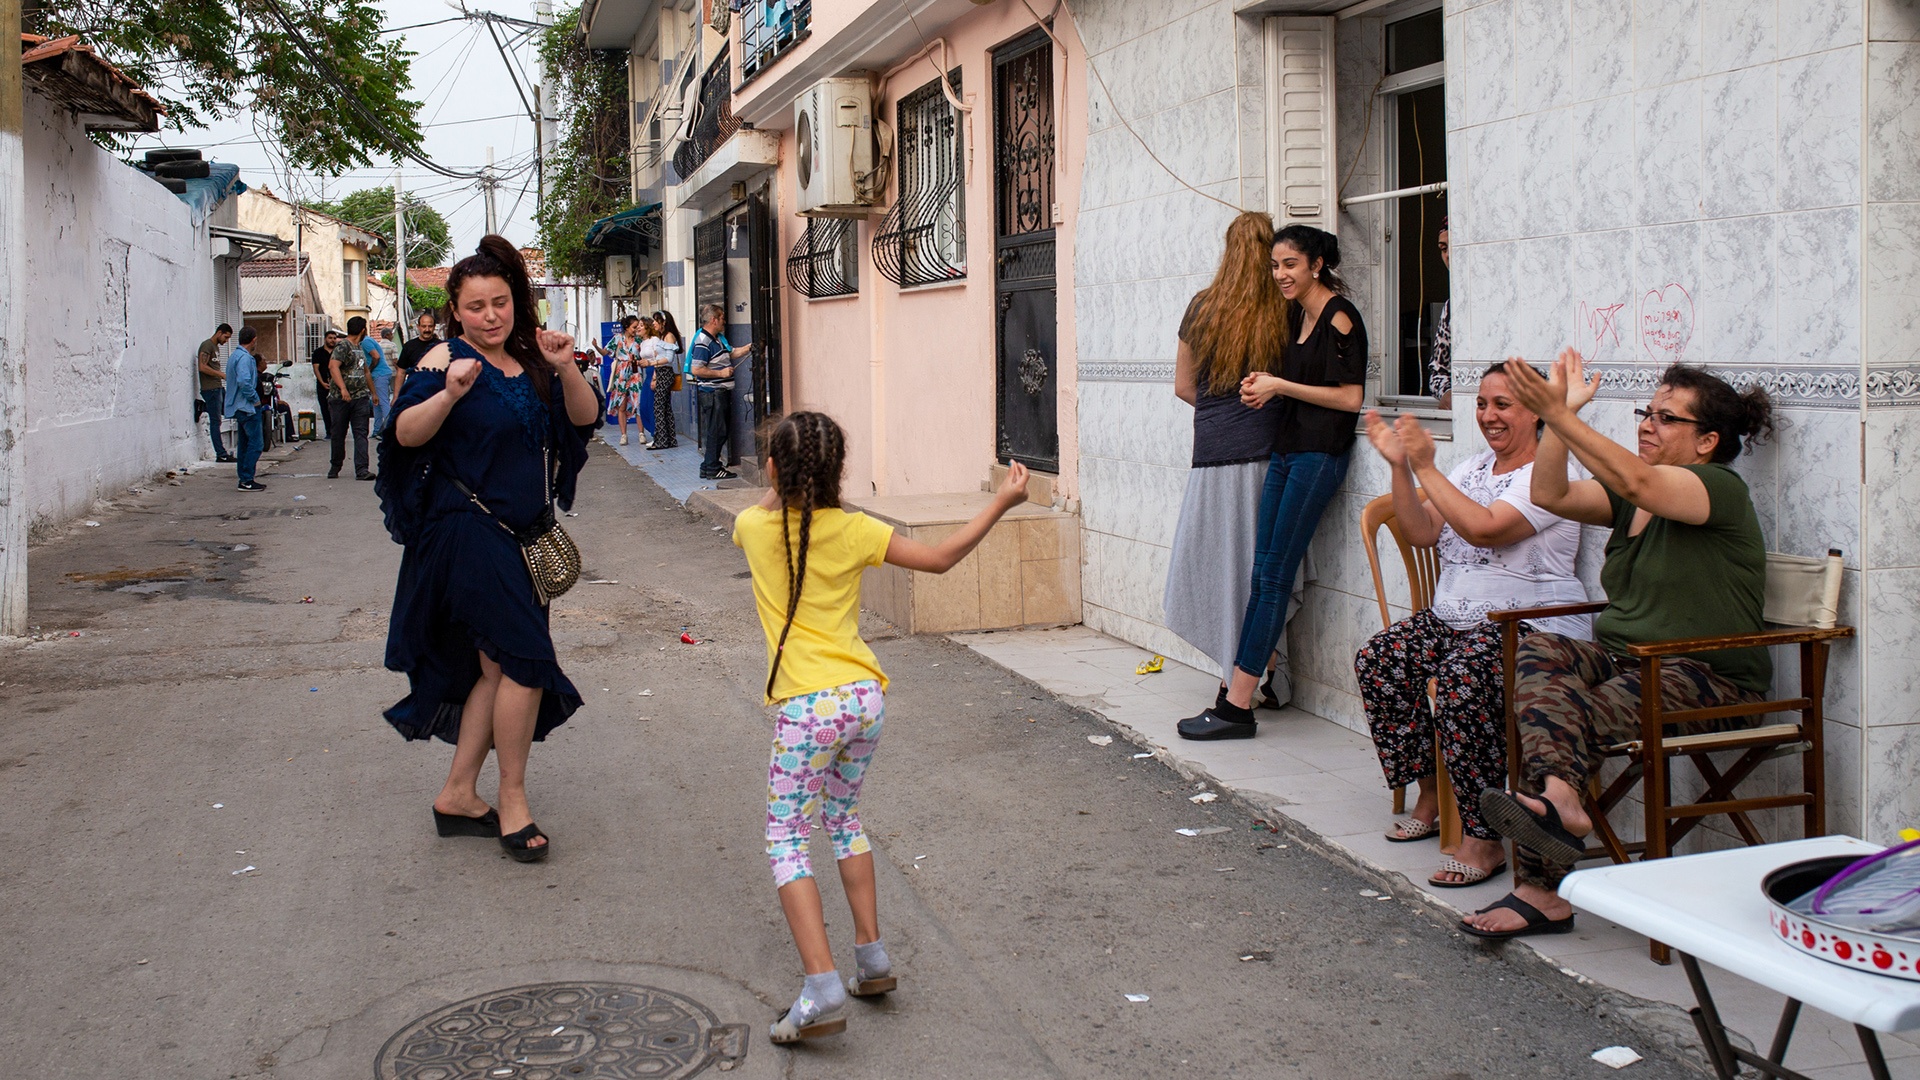 Menschen klatschen, während ein Mädchen und eine Frau auf der Straße tanzen